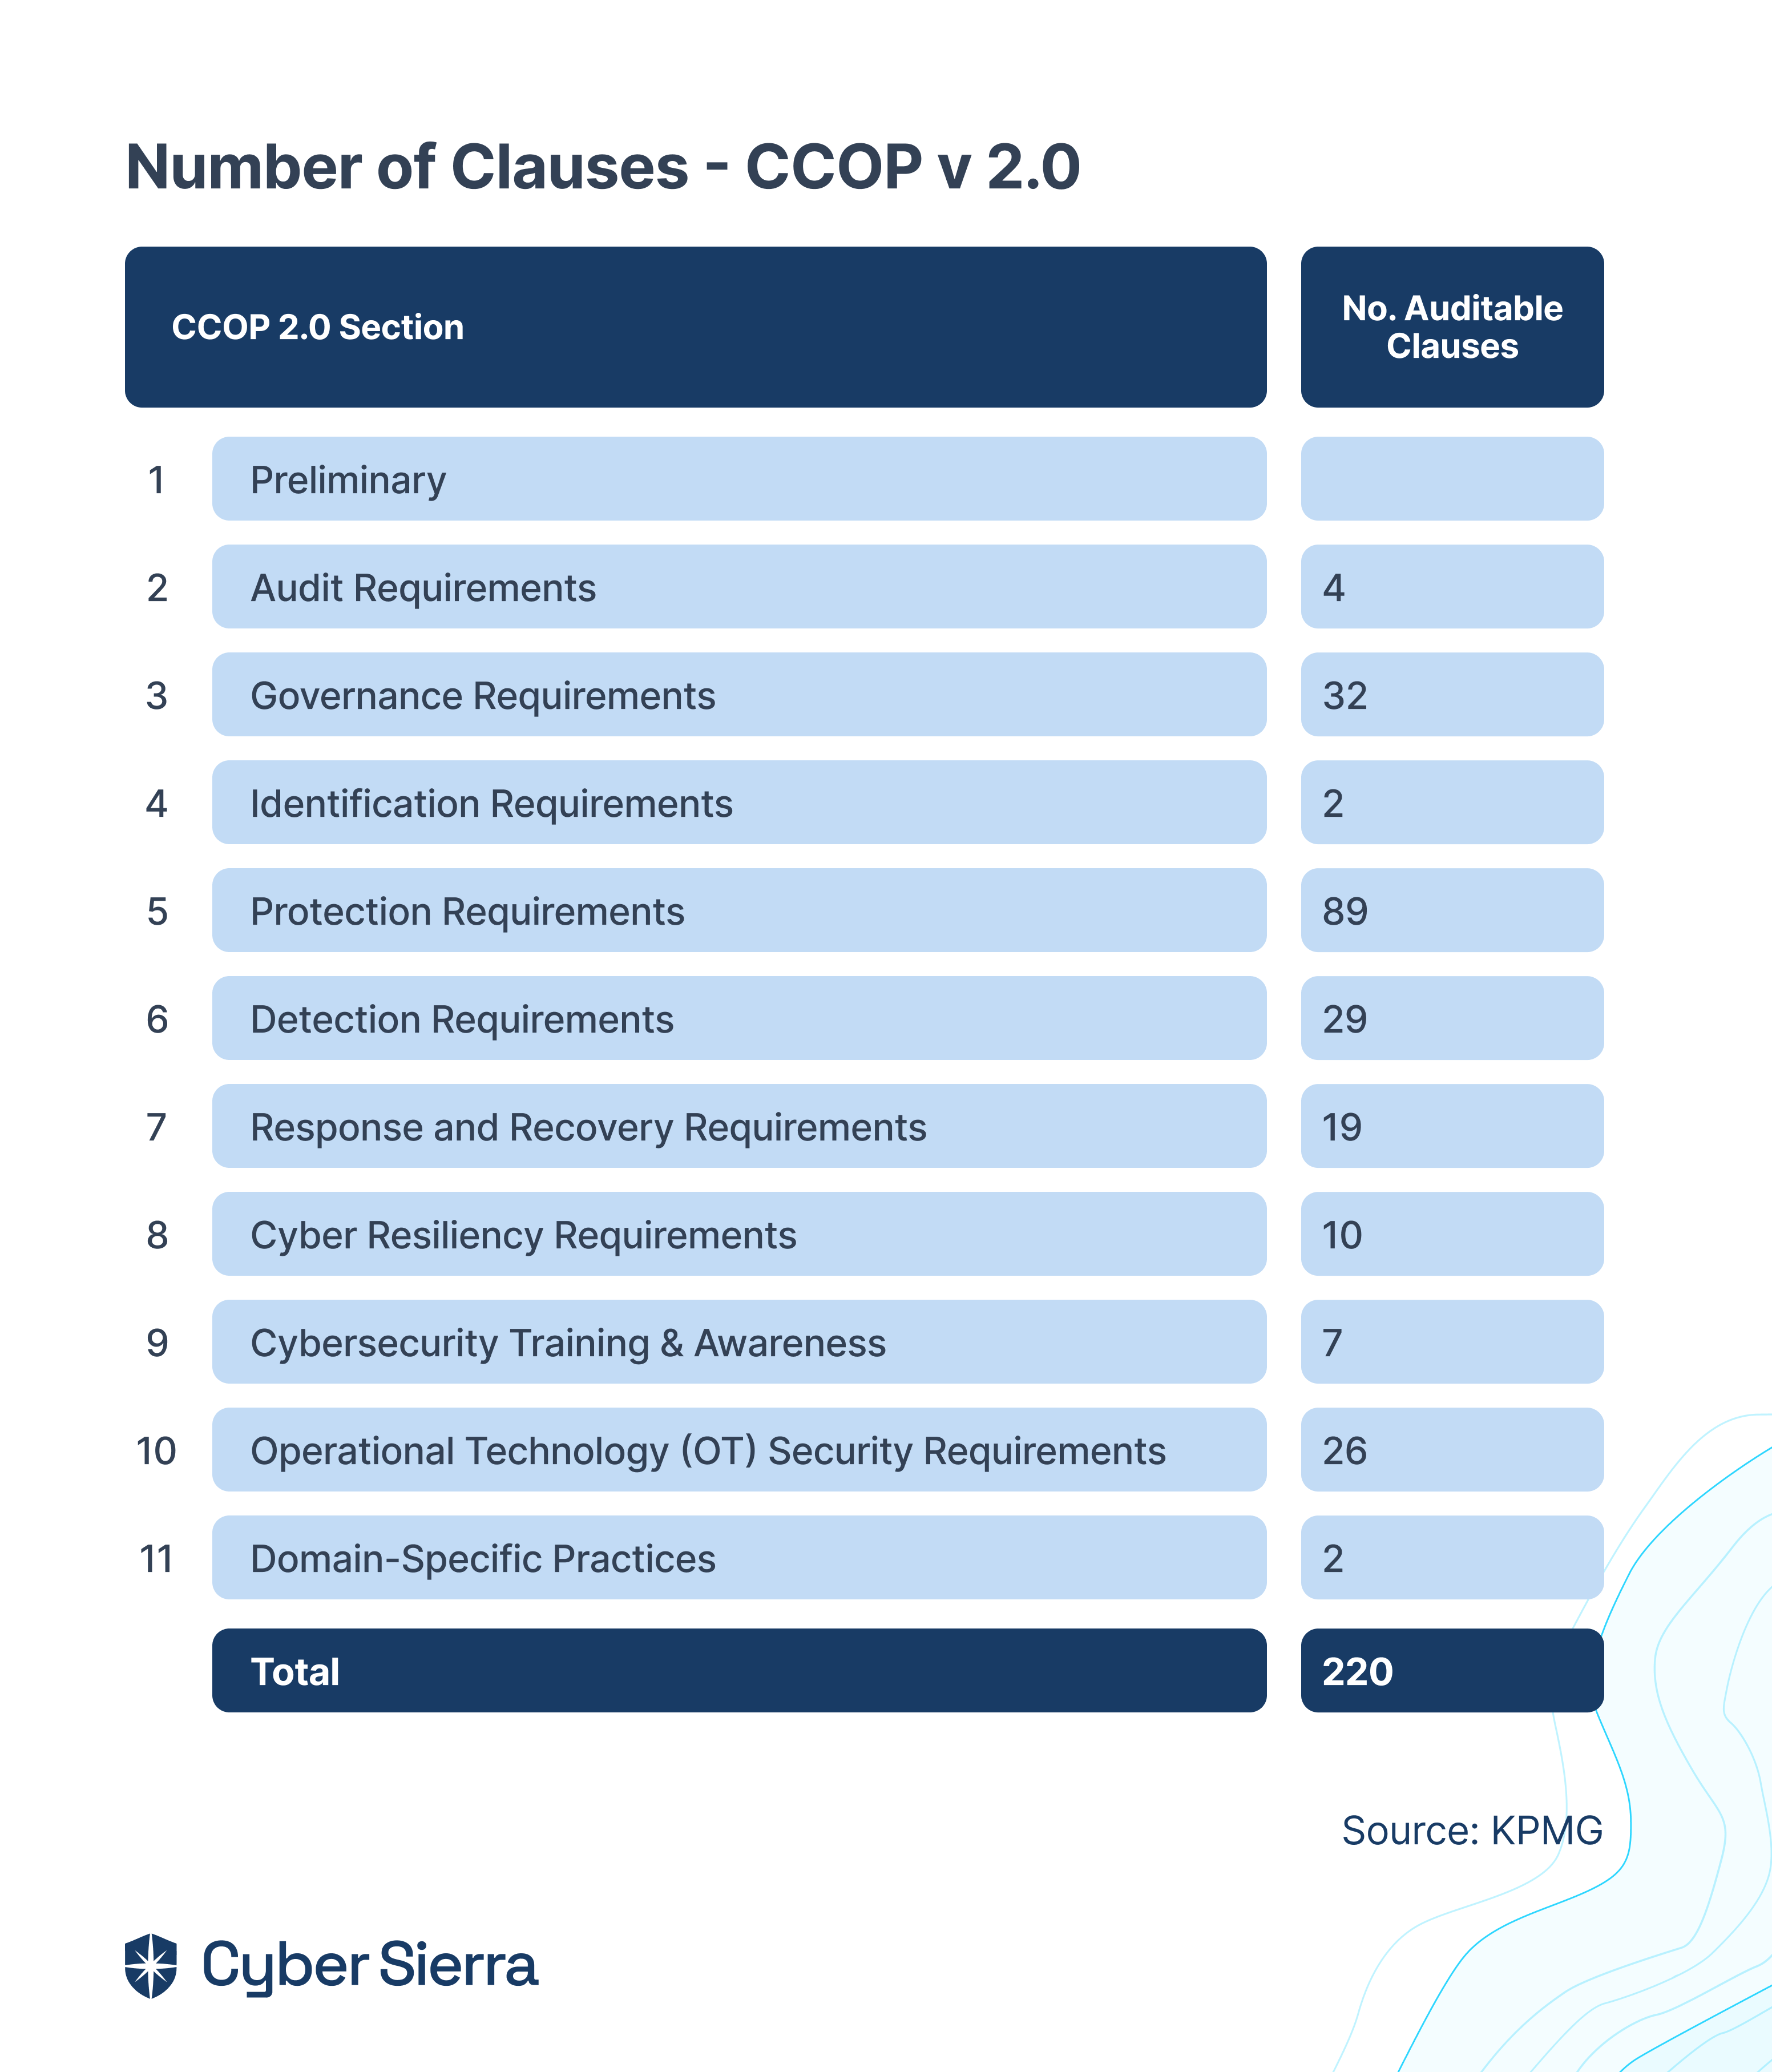 Number of Clauses - CCOP v 2.0.